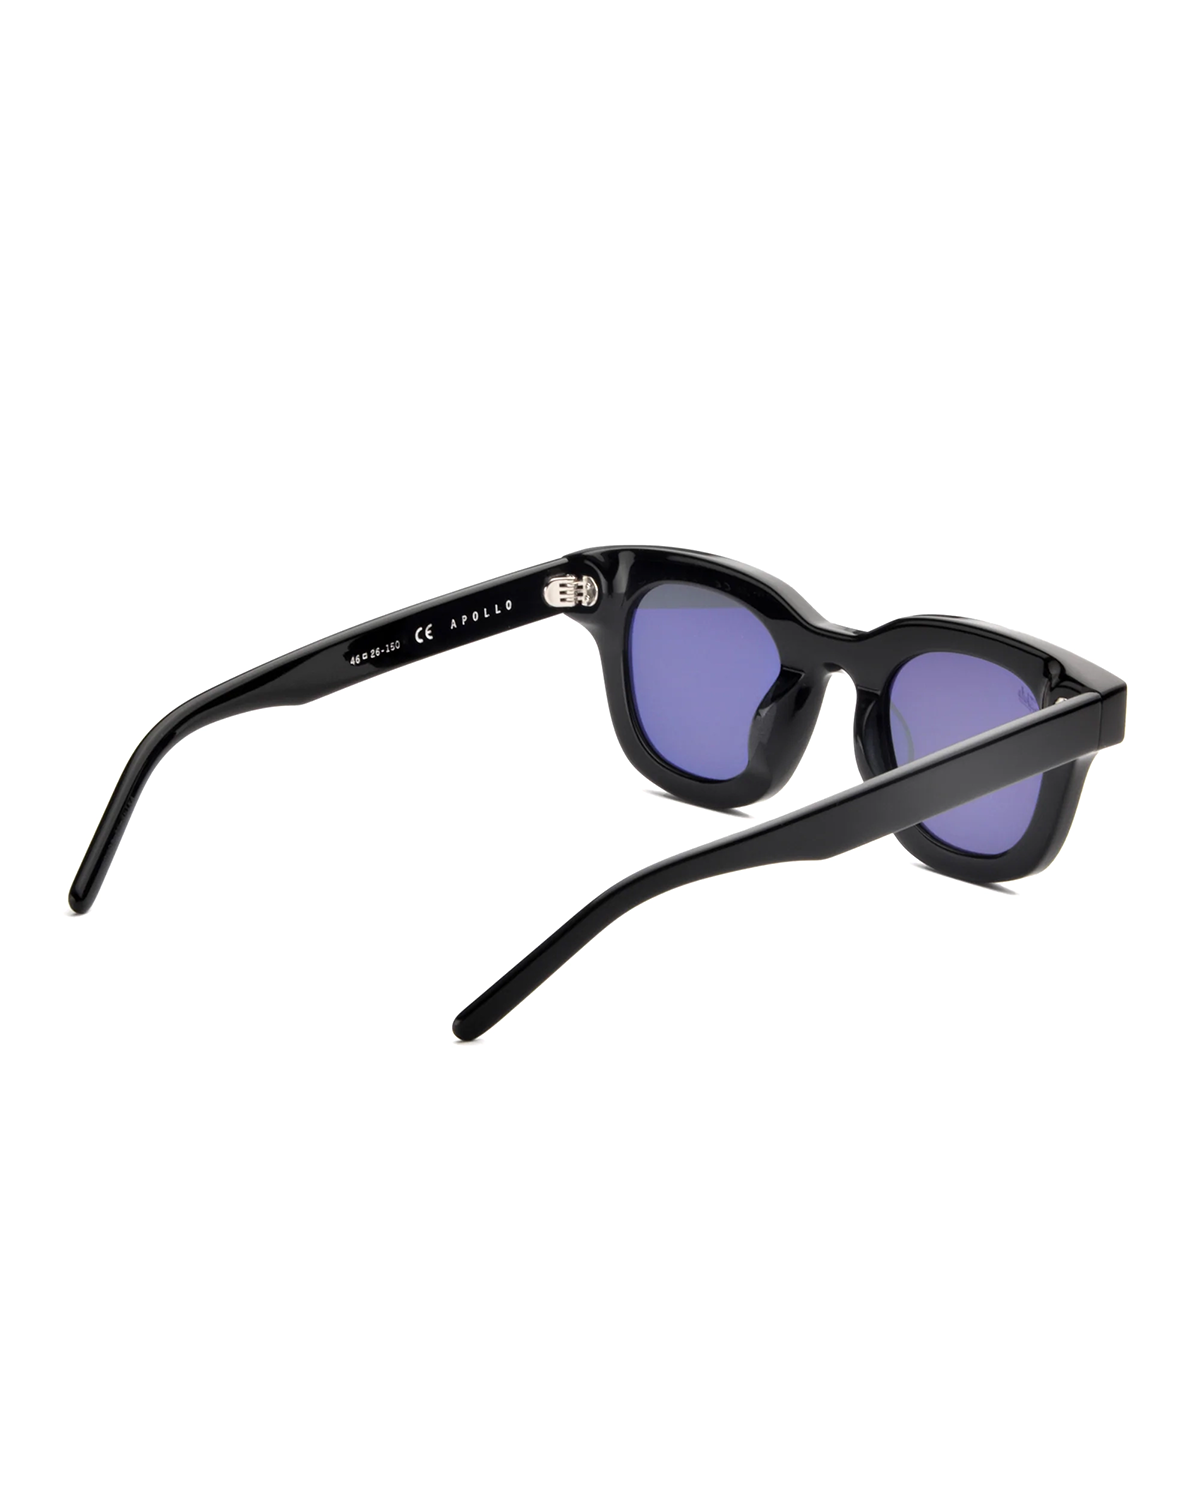 Apollo Sunglasses Black